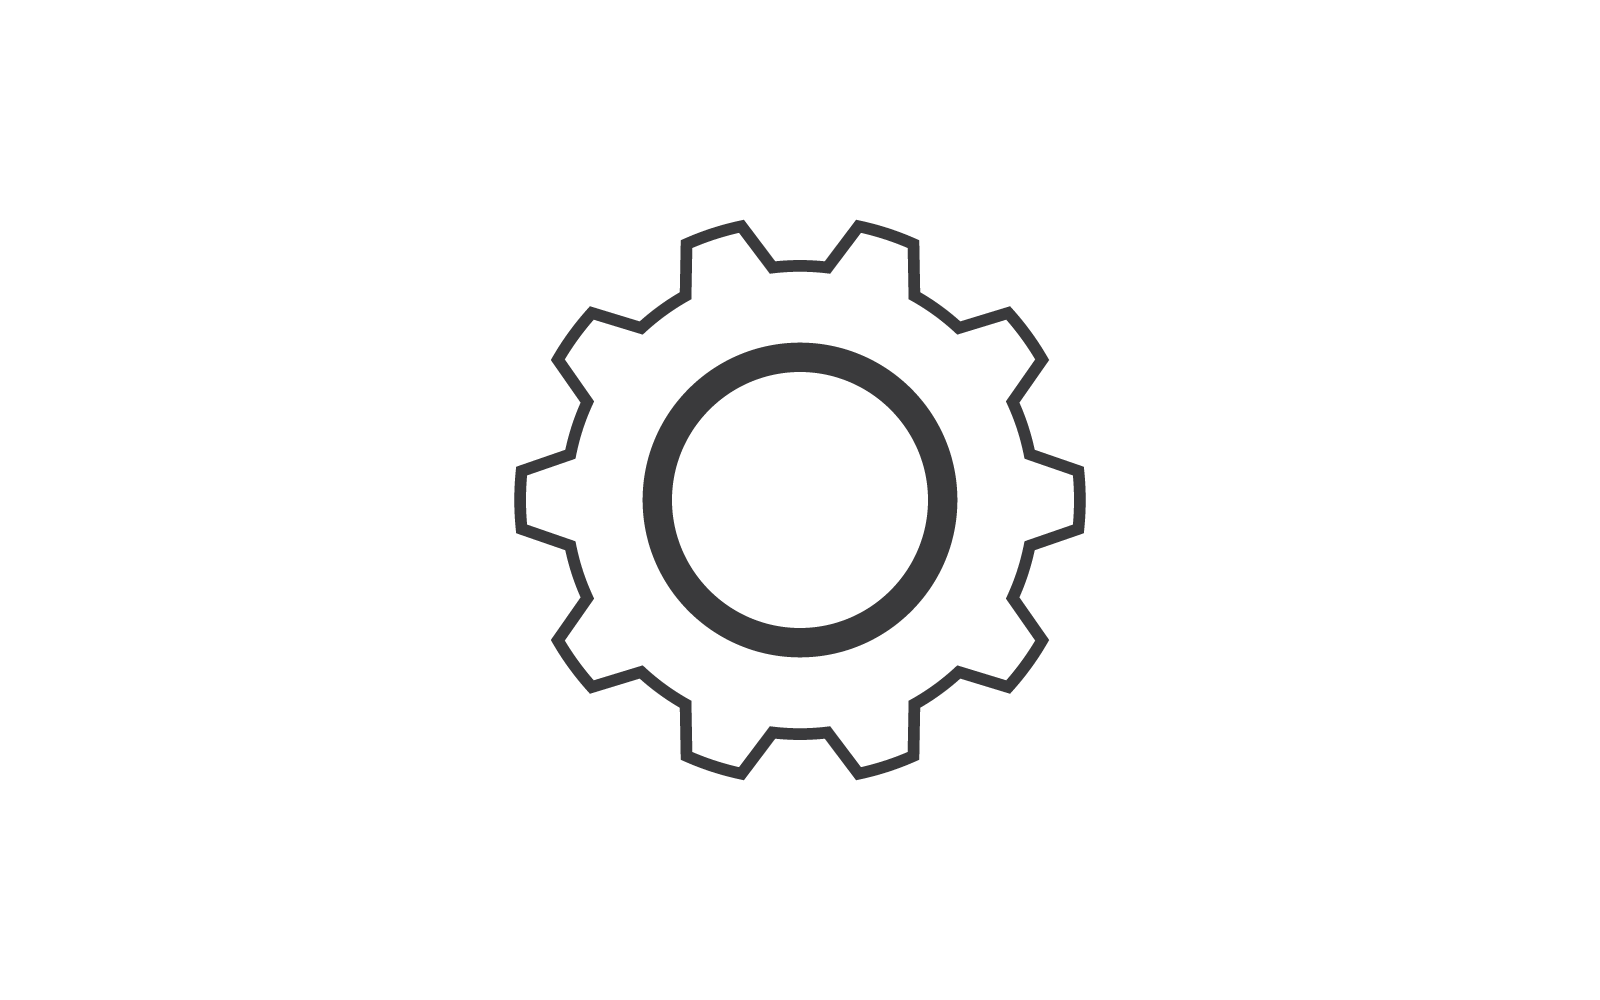 Gear technology logo design vector template